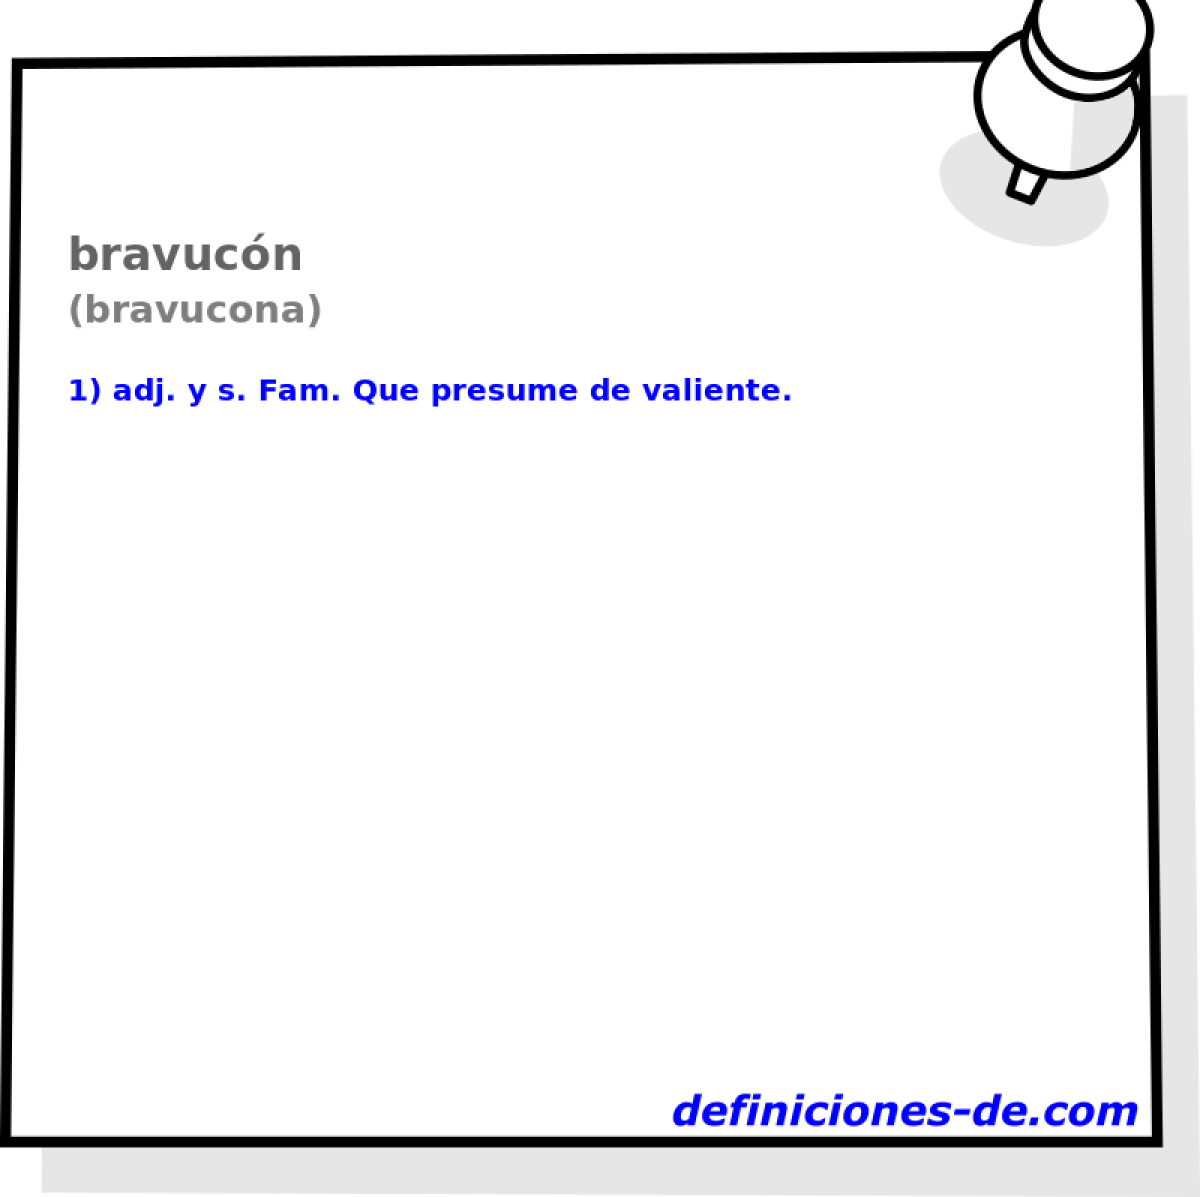 bravucón (bravucona)